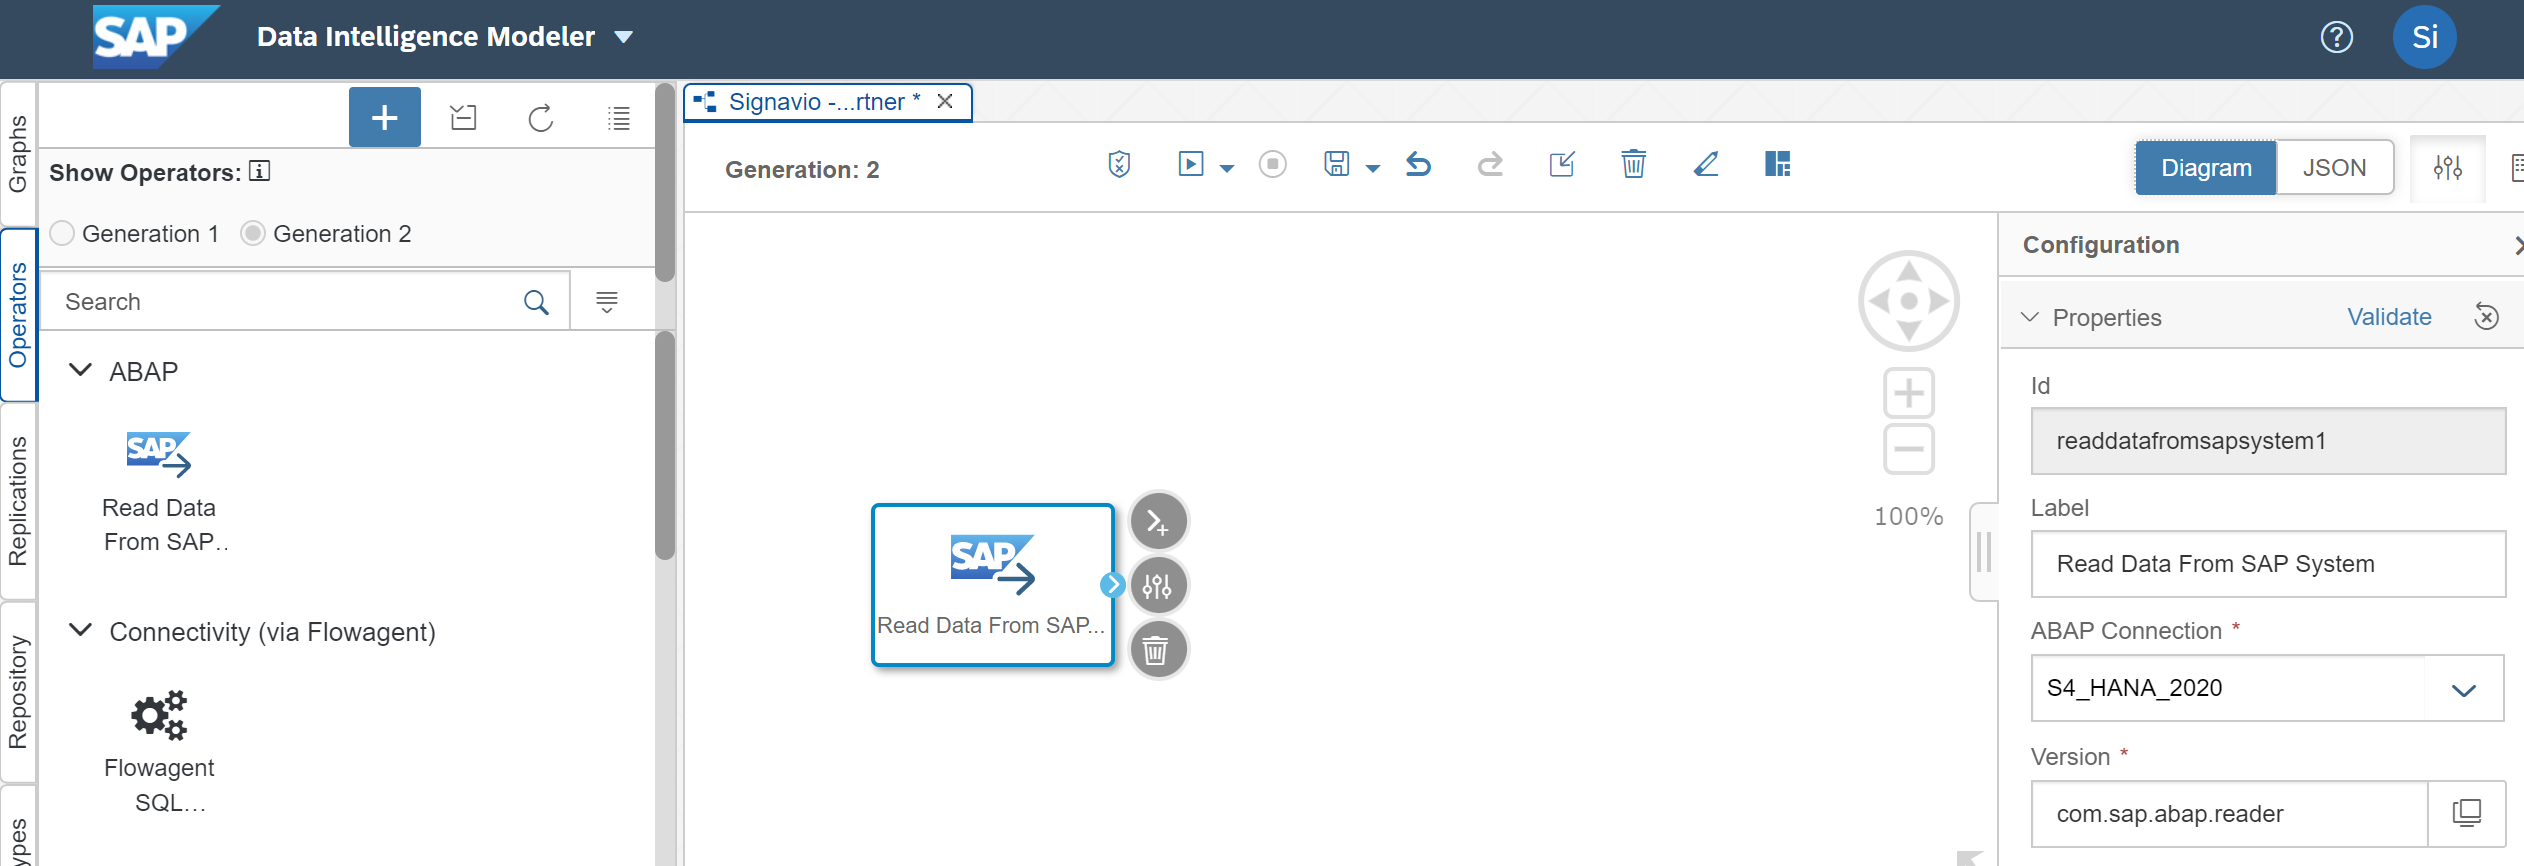 Afbeelding van SAP Data Intelligence Cloud tools.